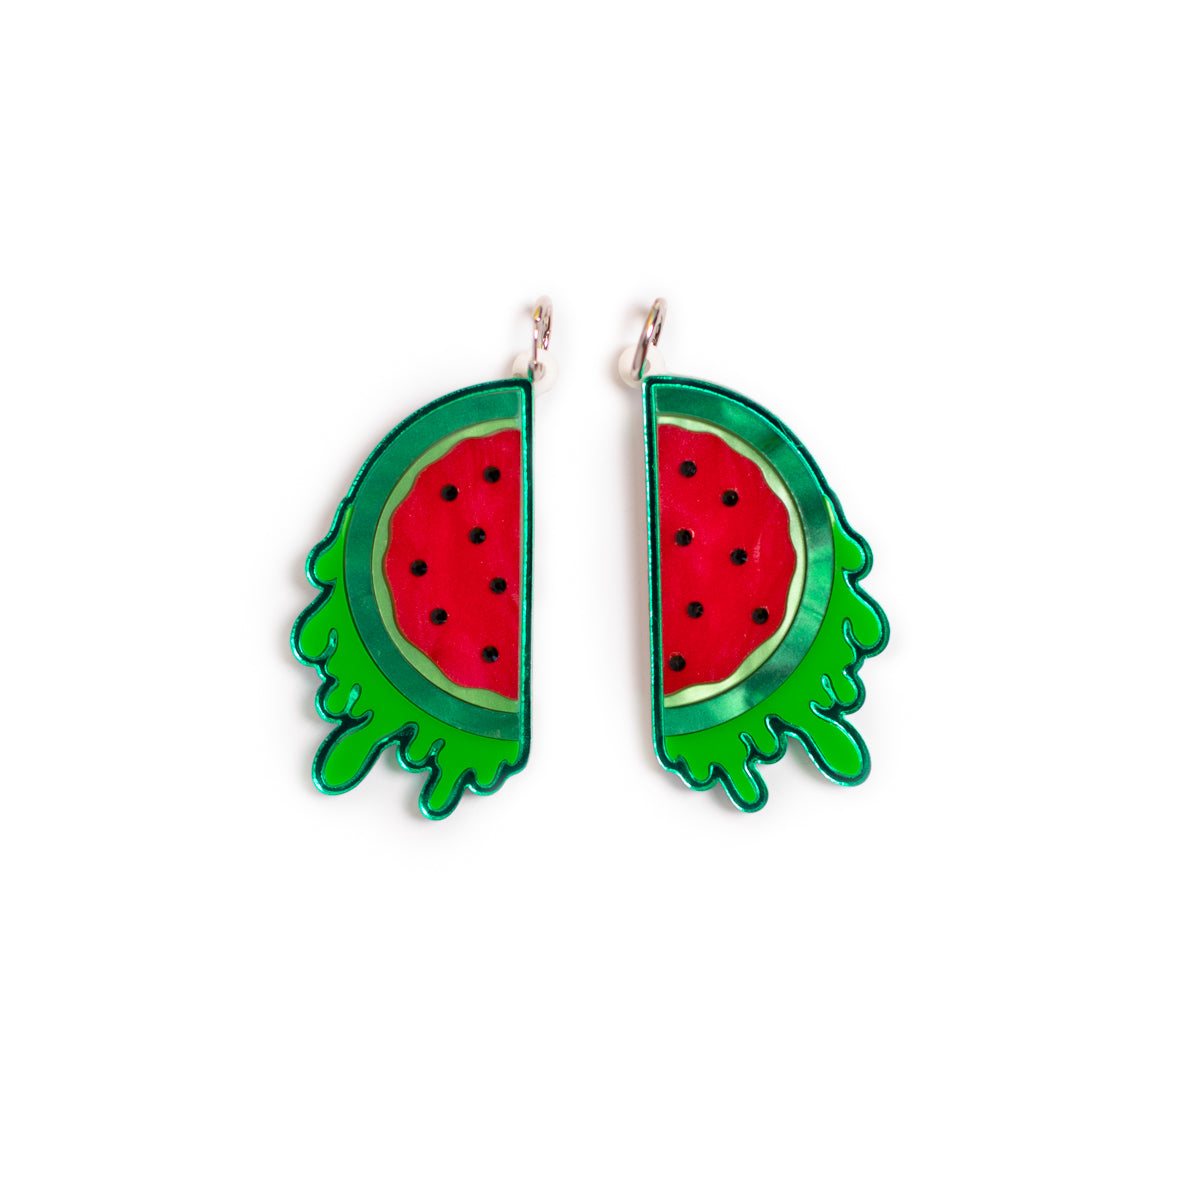 The Watermelon Earrings